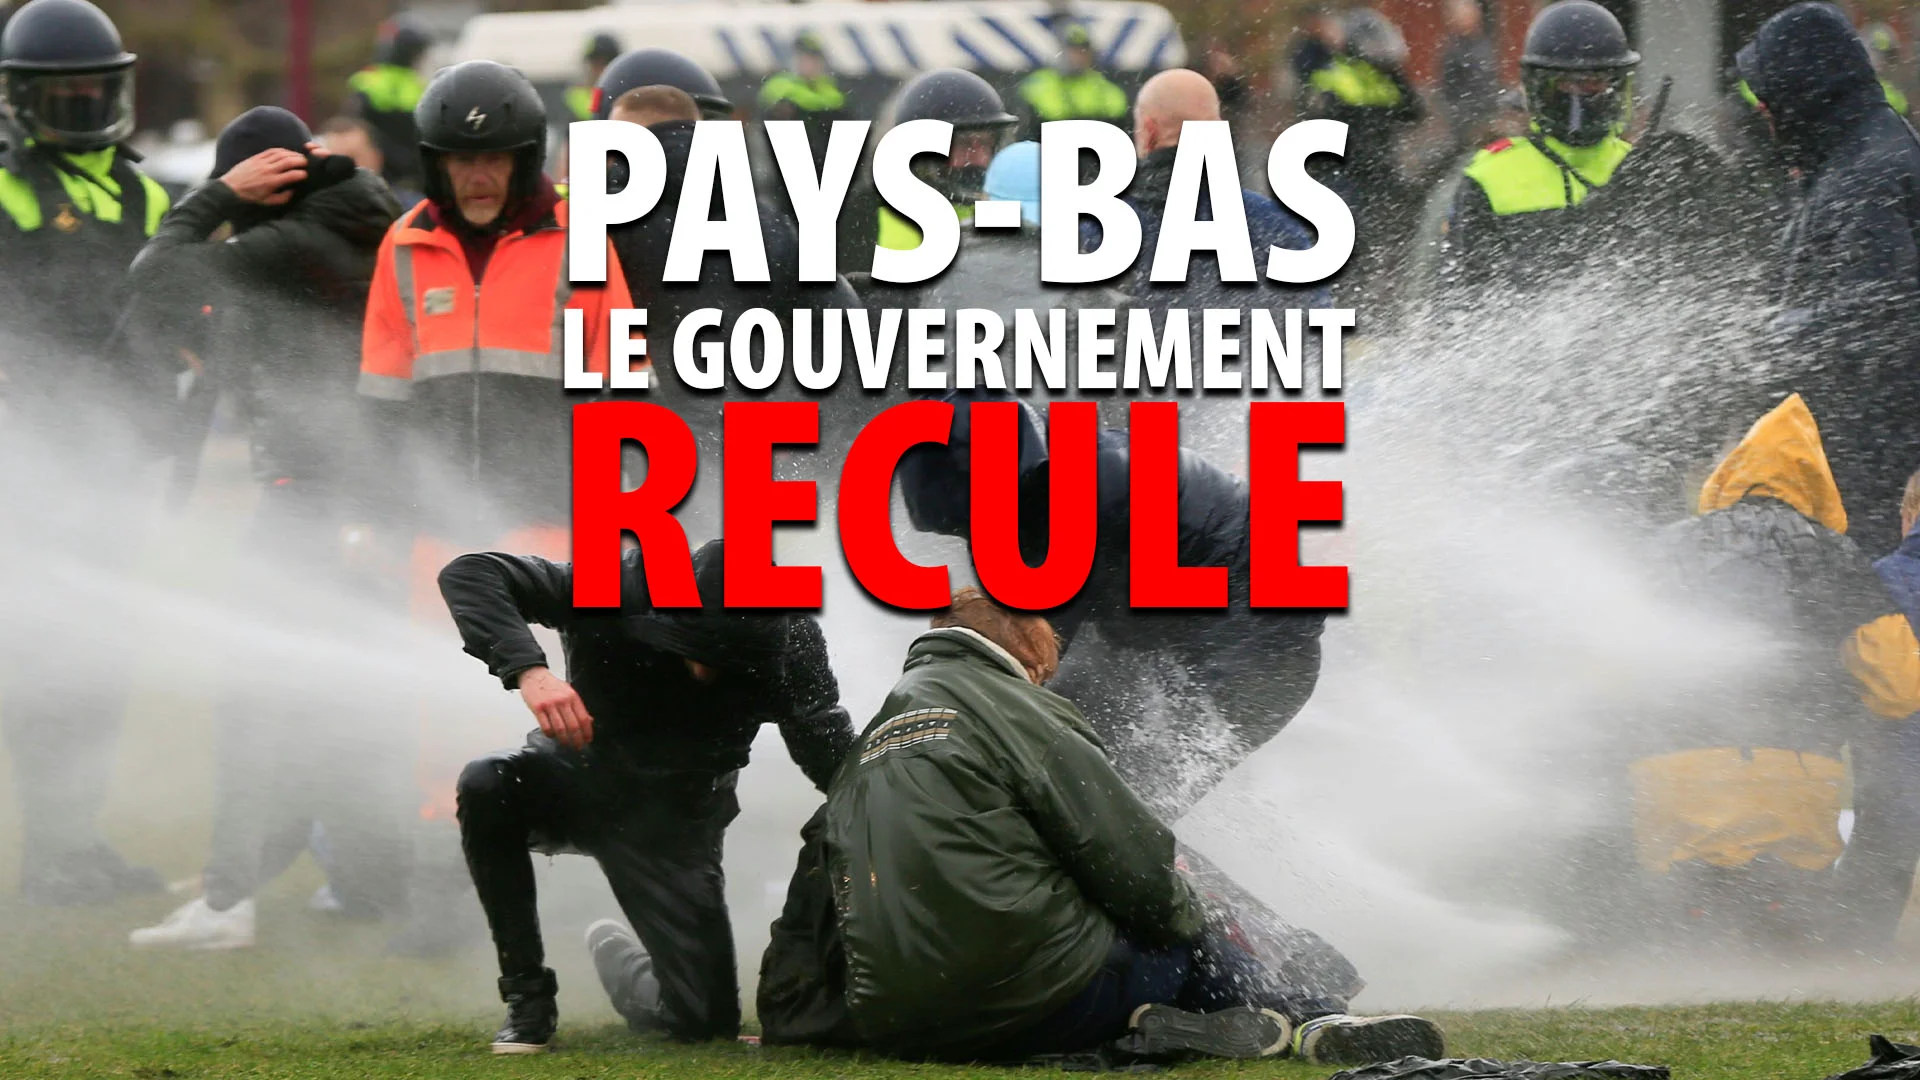 PAYS-BAS: LE GOUVERNEMENT DOIT RECULER